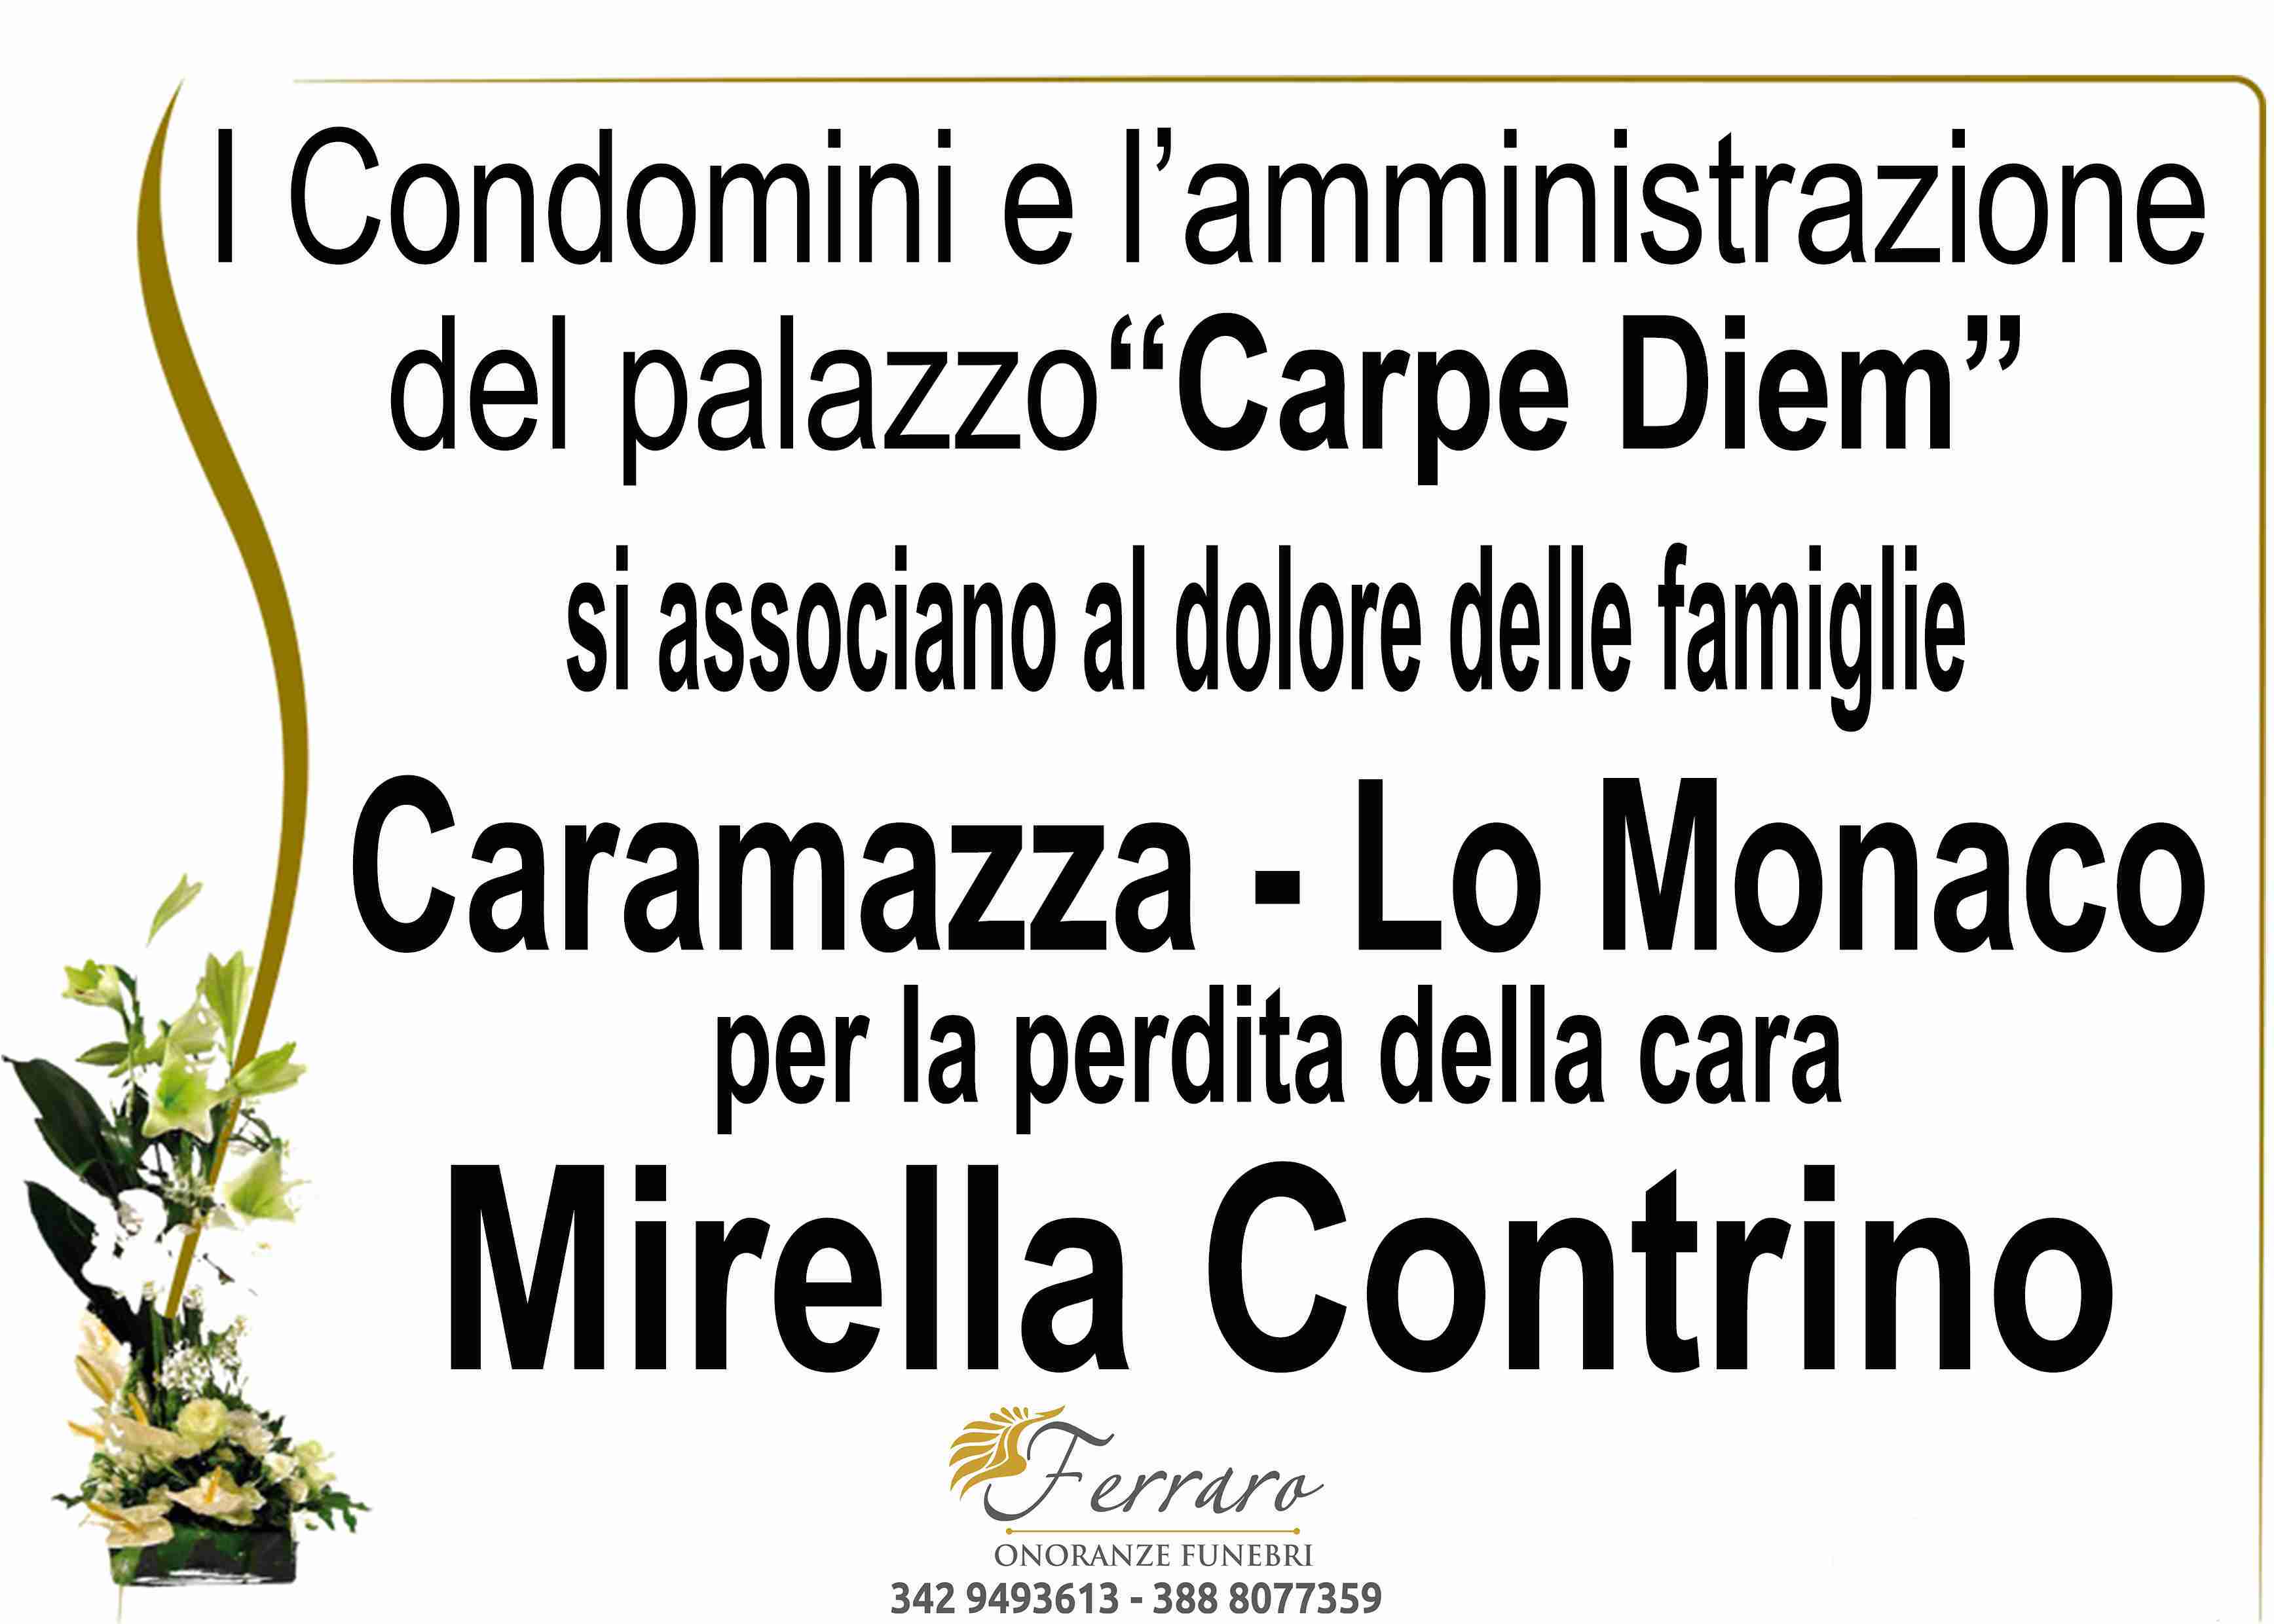 Mirella Contrino